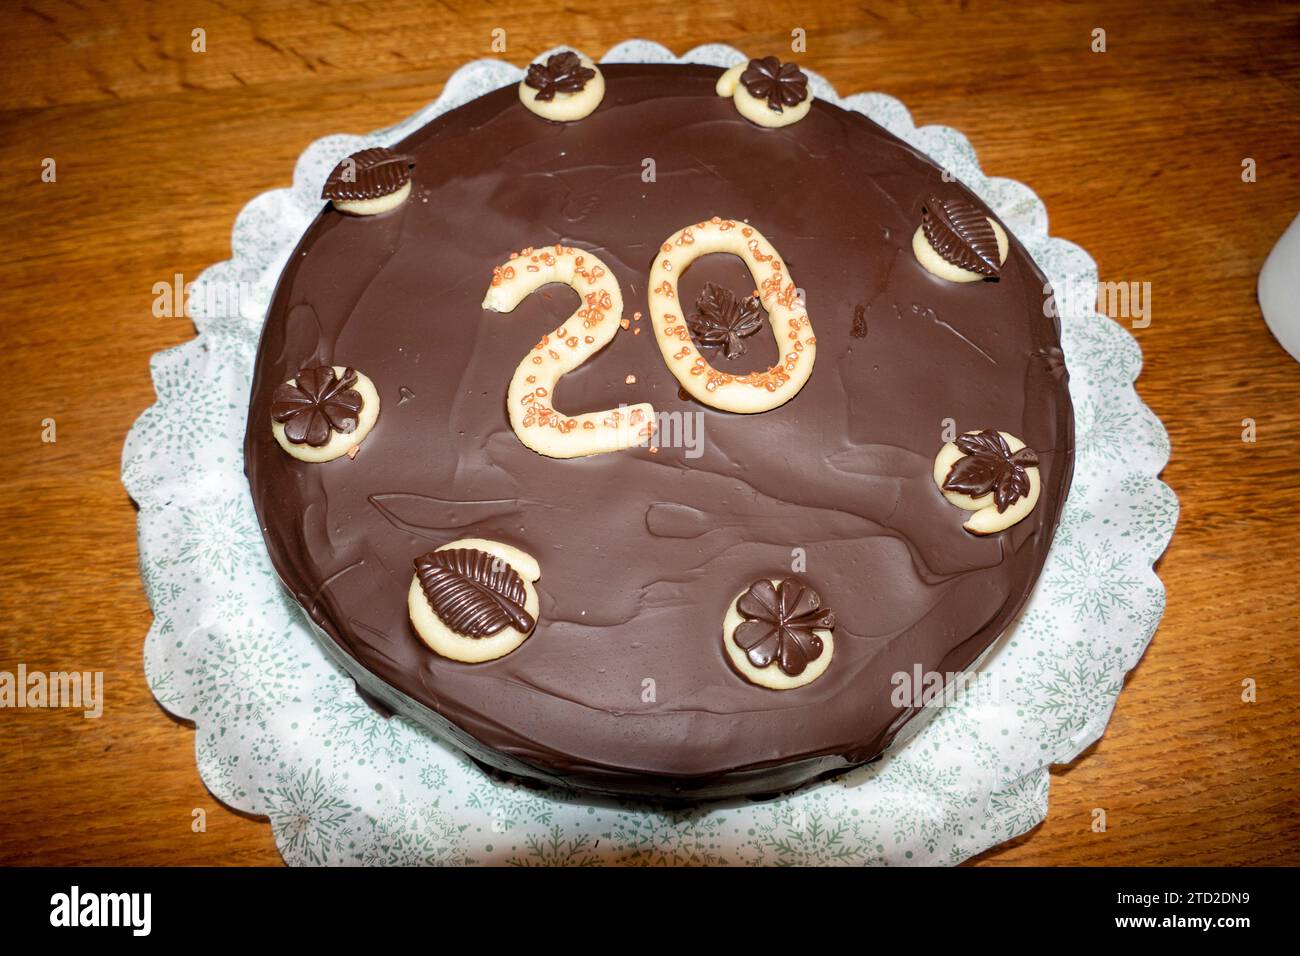 Torte mit Schokoladenguss und einer 20 aus Marzipan dekoriert Stockfoto